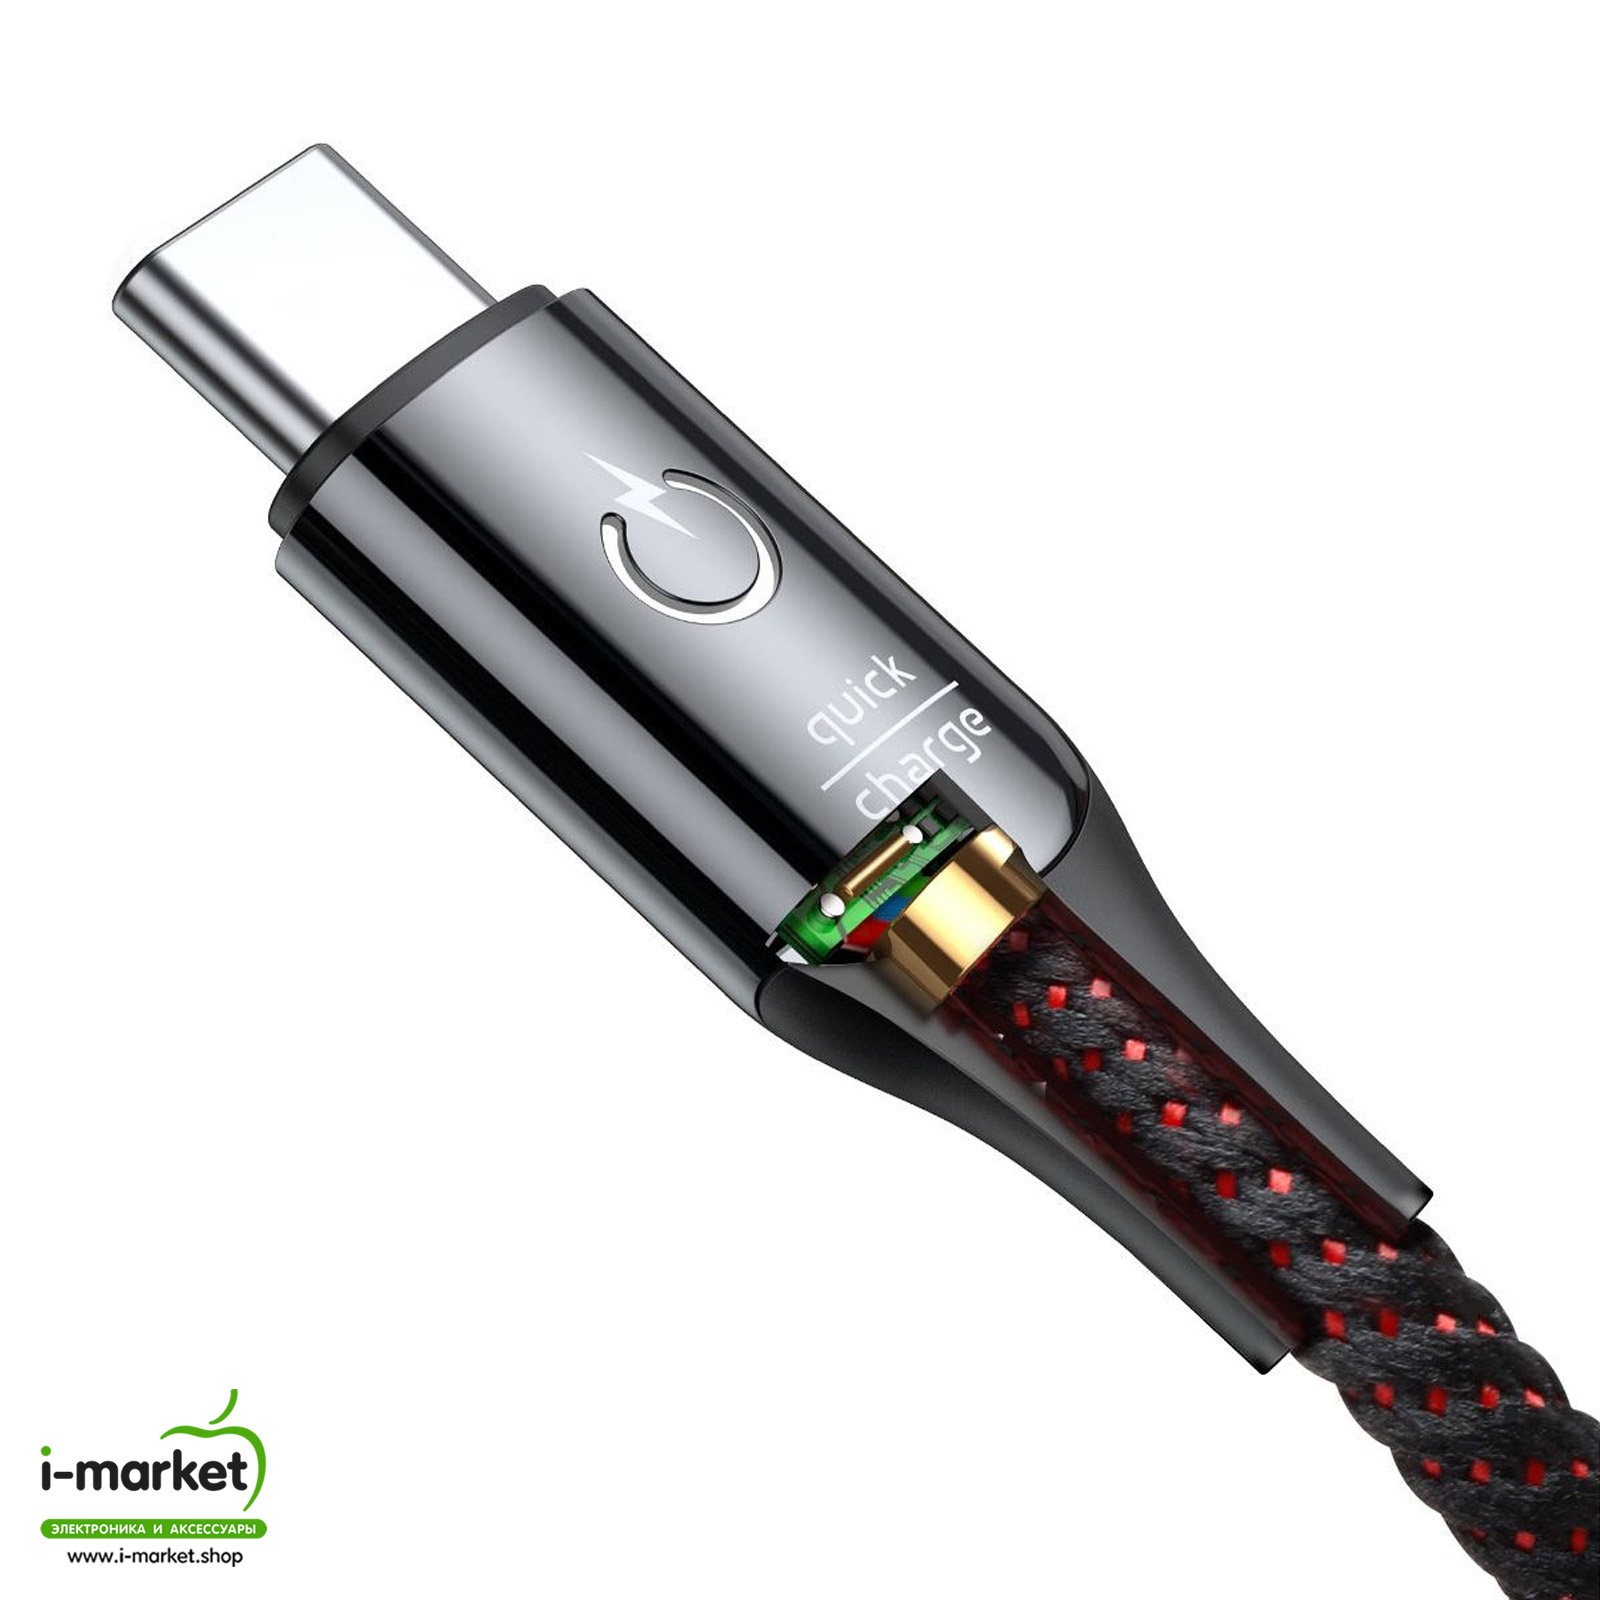 Кабель Type-C aka USB-C, 3A, длина 1 метр, Baseus C-shaped Light Intelligent power-off Cable, цвет черный